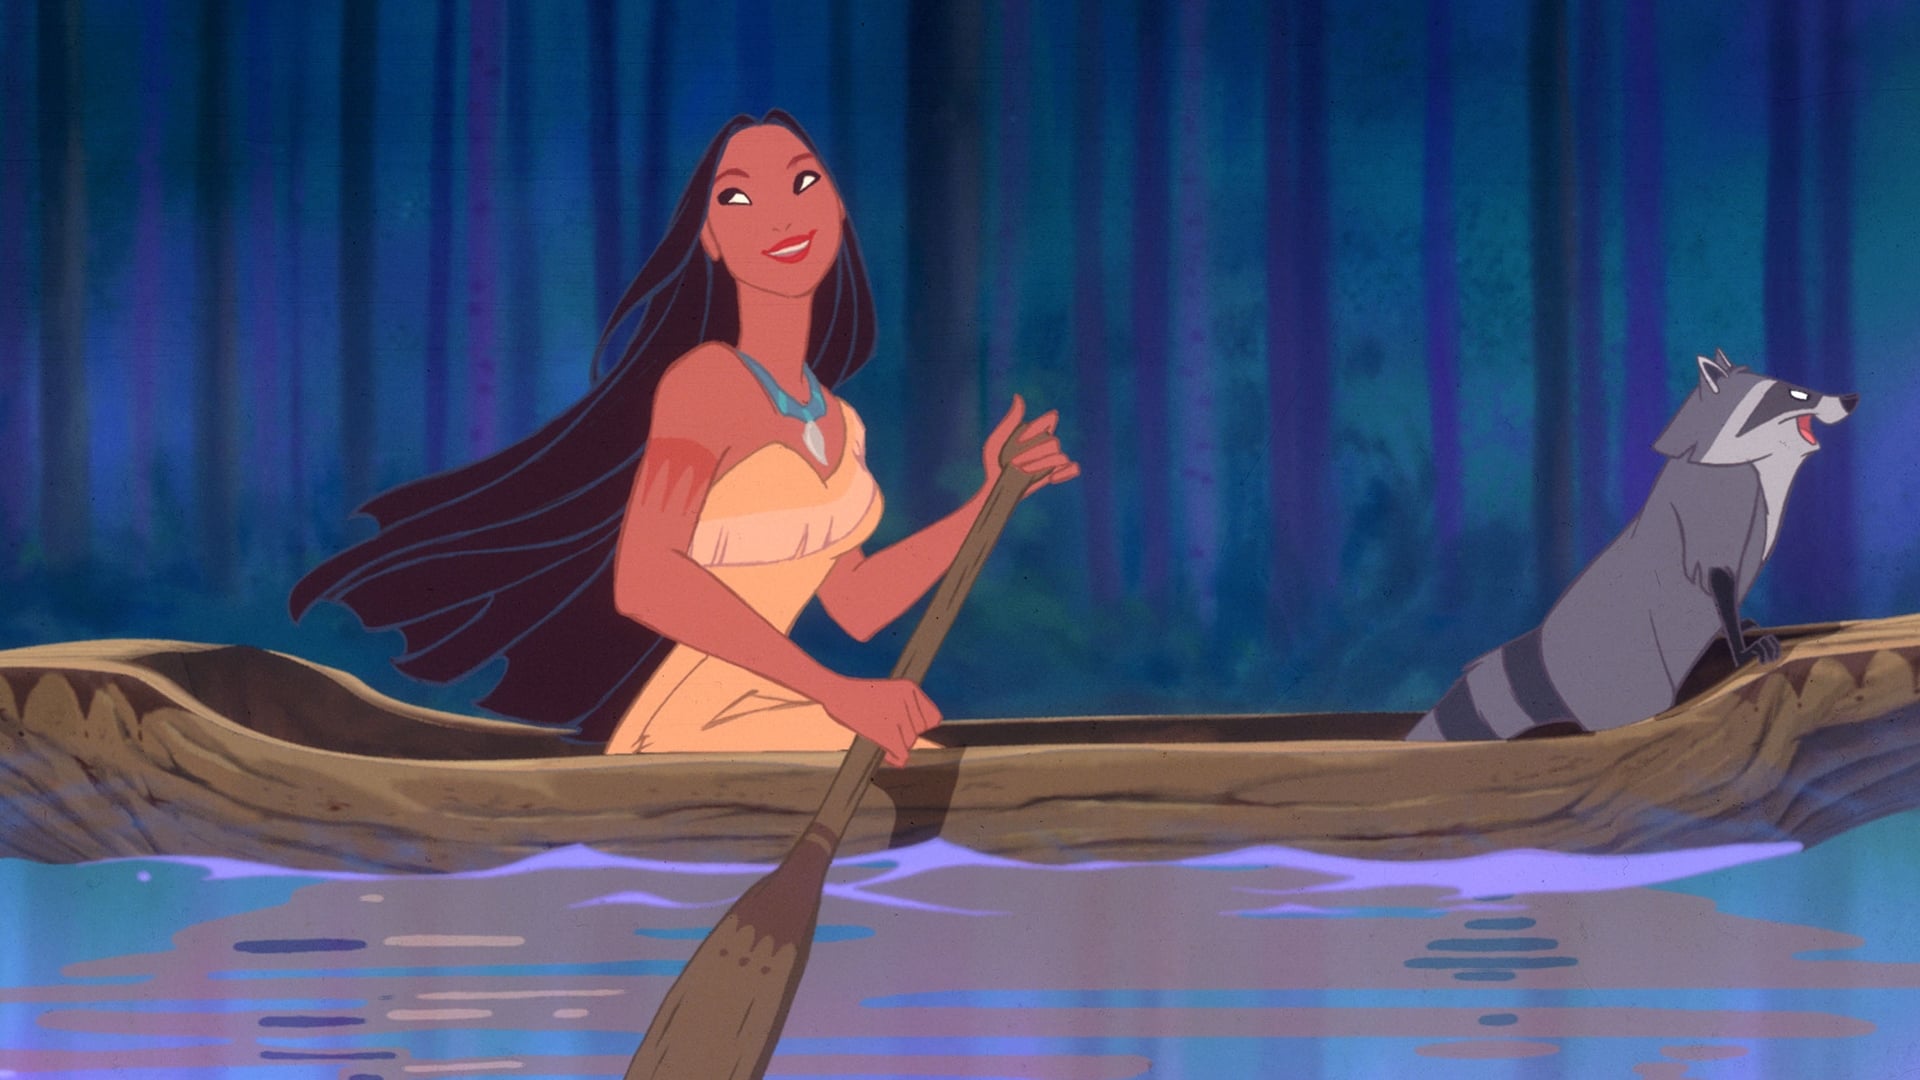 Image du film Pocahontas, une légende indienne si8k30u5iw8rkbkc4cxya18lpwljpg